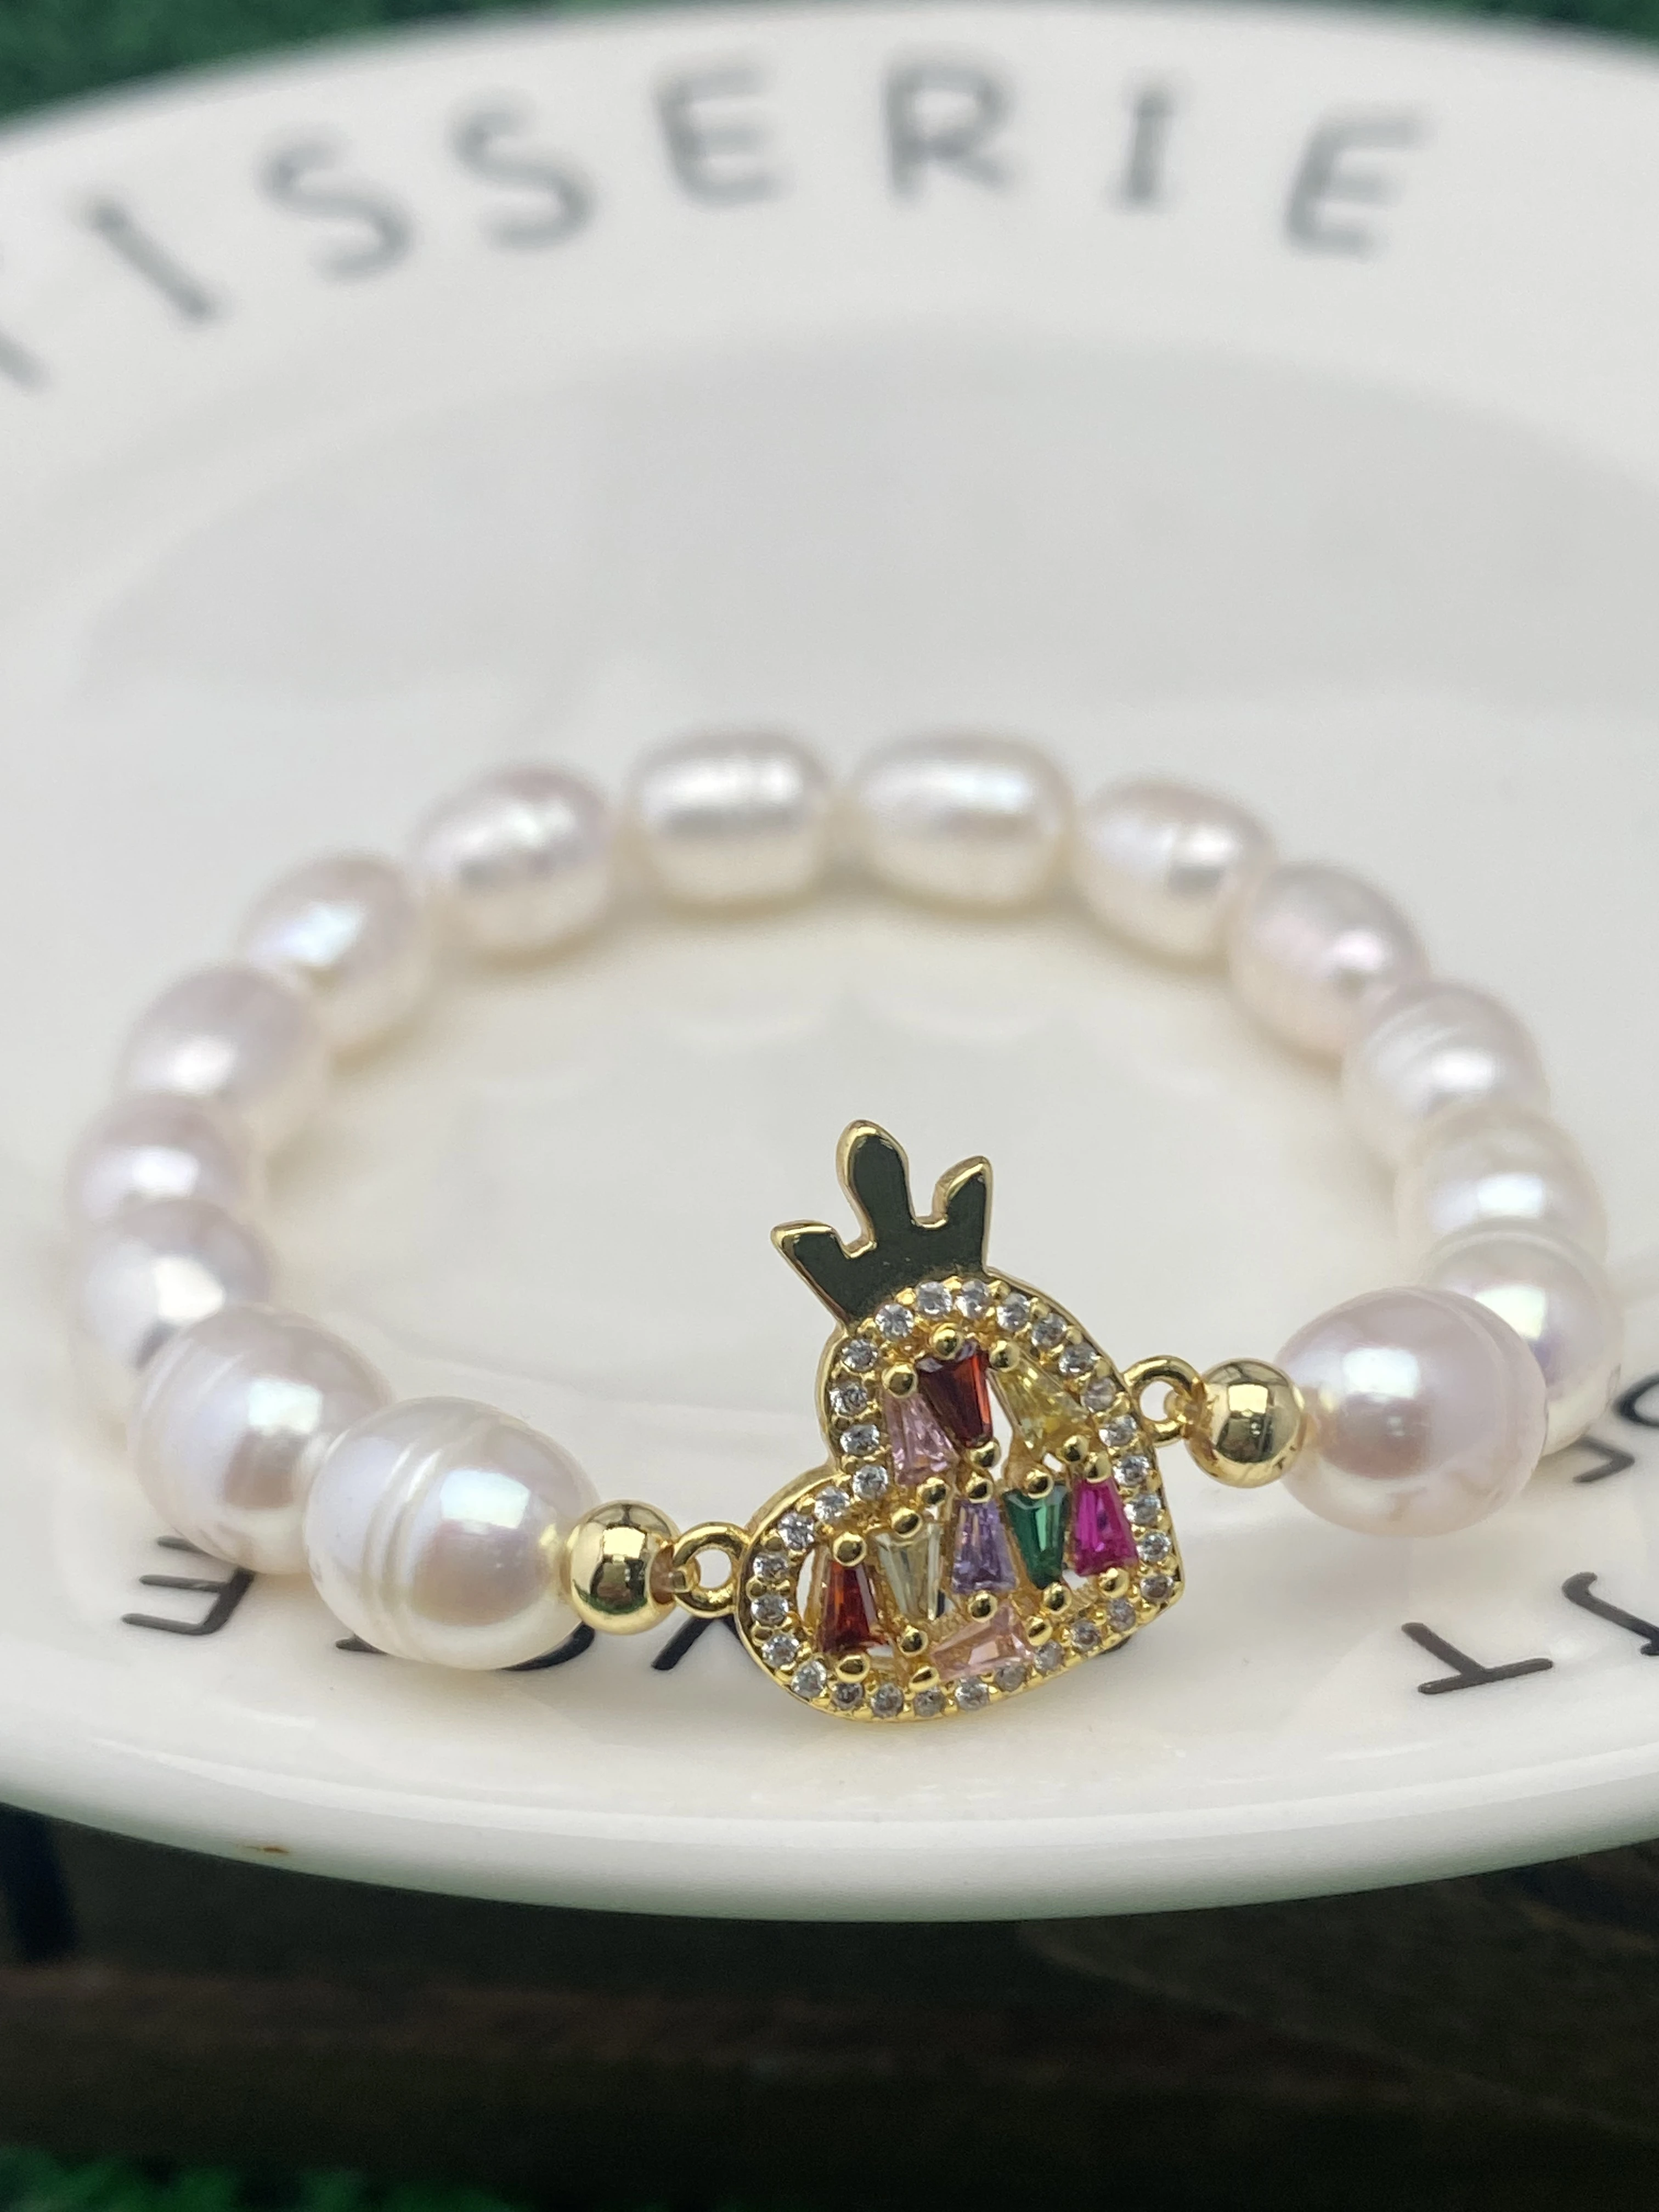 

Dainty Heart With Crow Bracelet For Women Girlfriend Birthday Graduation Gifts Jewelry